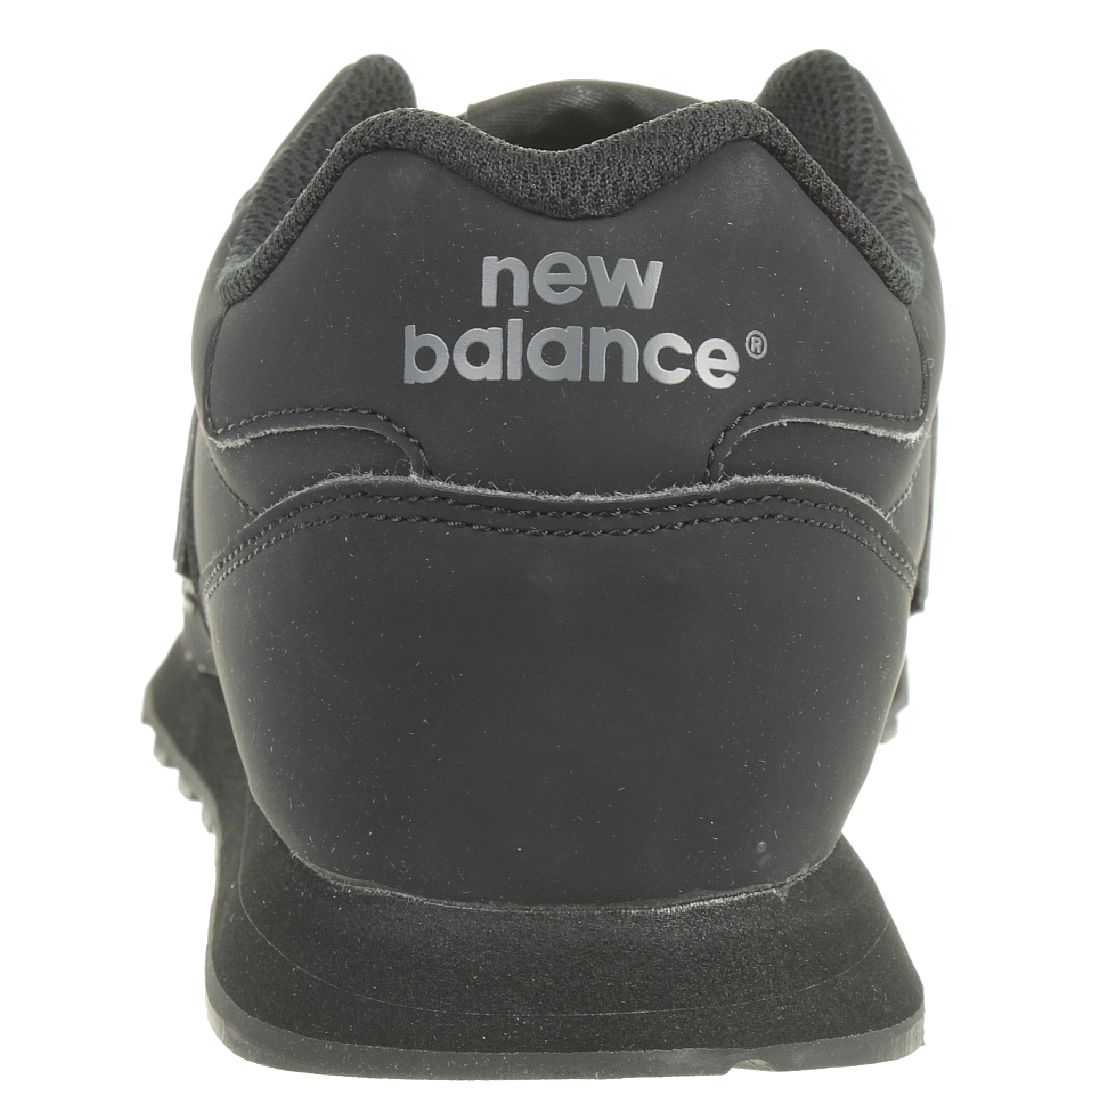 New Balance GM500 TRB Lifestyle Sneaker Herren Turnschuhe schwarz